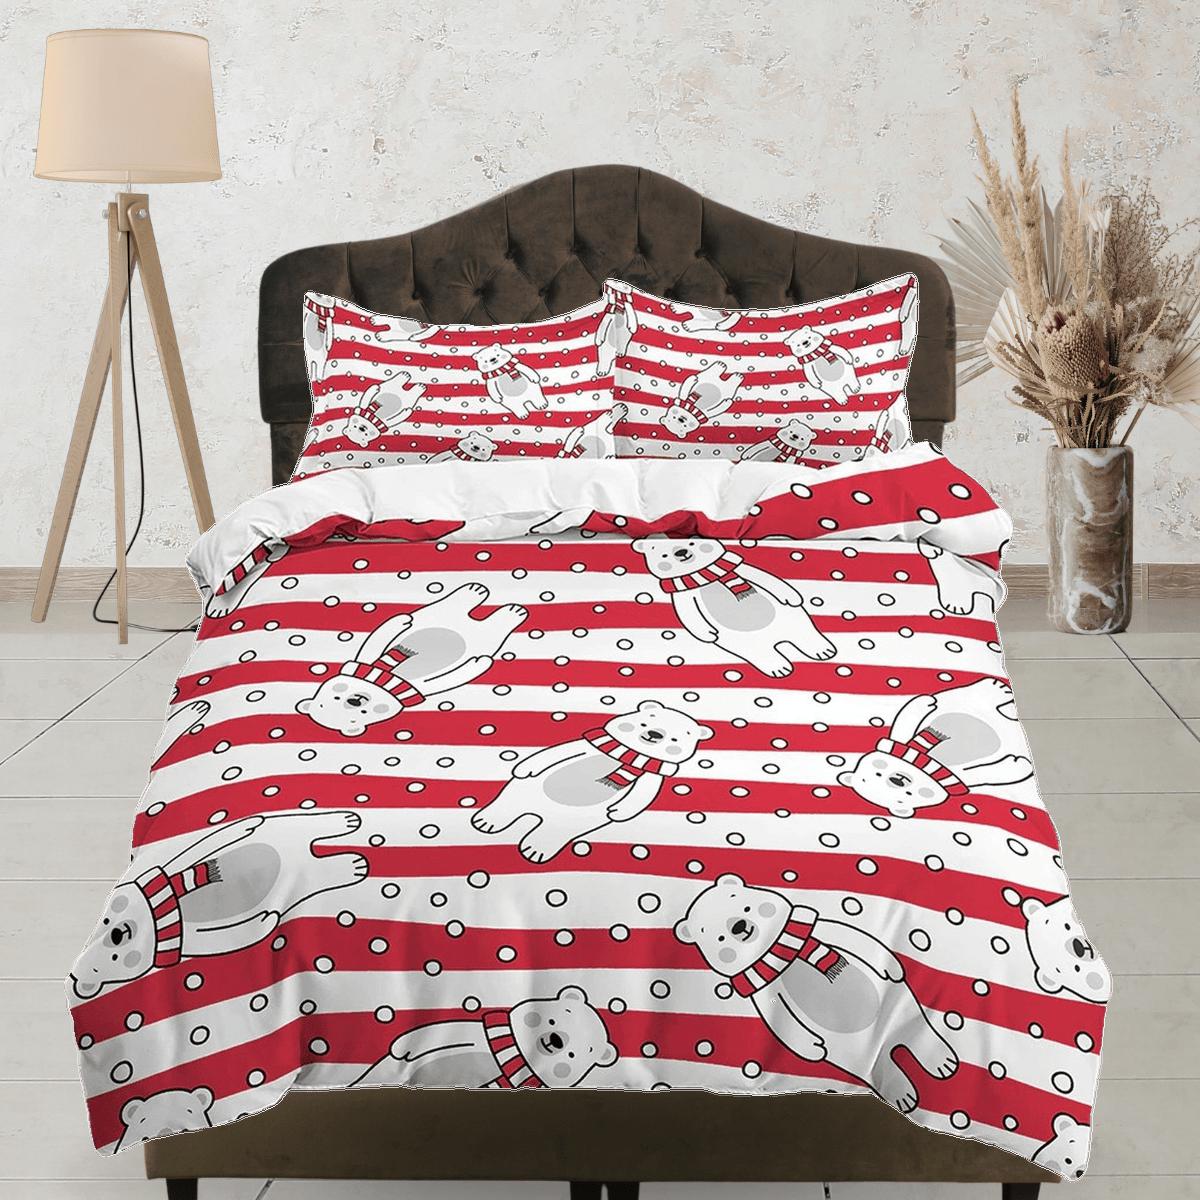 daintyduvet Polar bear in red stripes toddler bedding, duvet cover for nursery kids, crib bedding, baby zipper bedding, king queen full twin